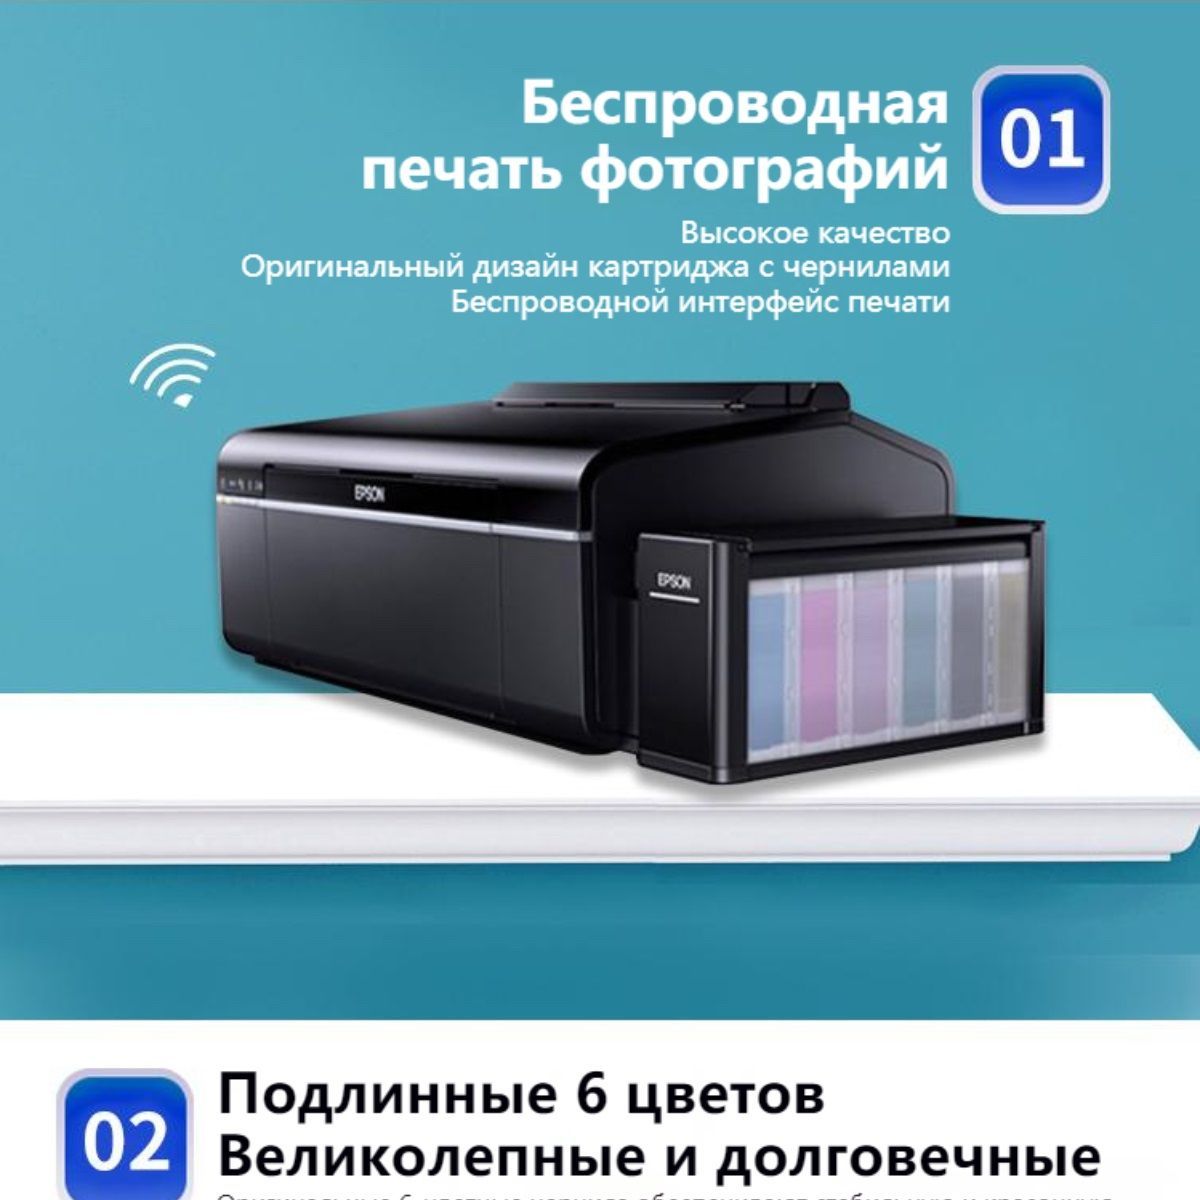 Принтер Epson L805 СНПЧ Цветной печать купить по низкой цене отзывы фото характеристики в 4337